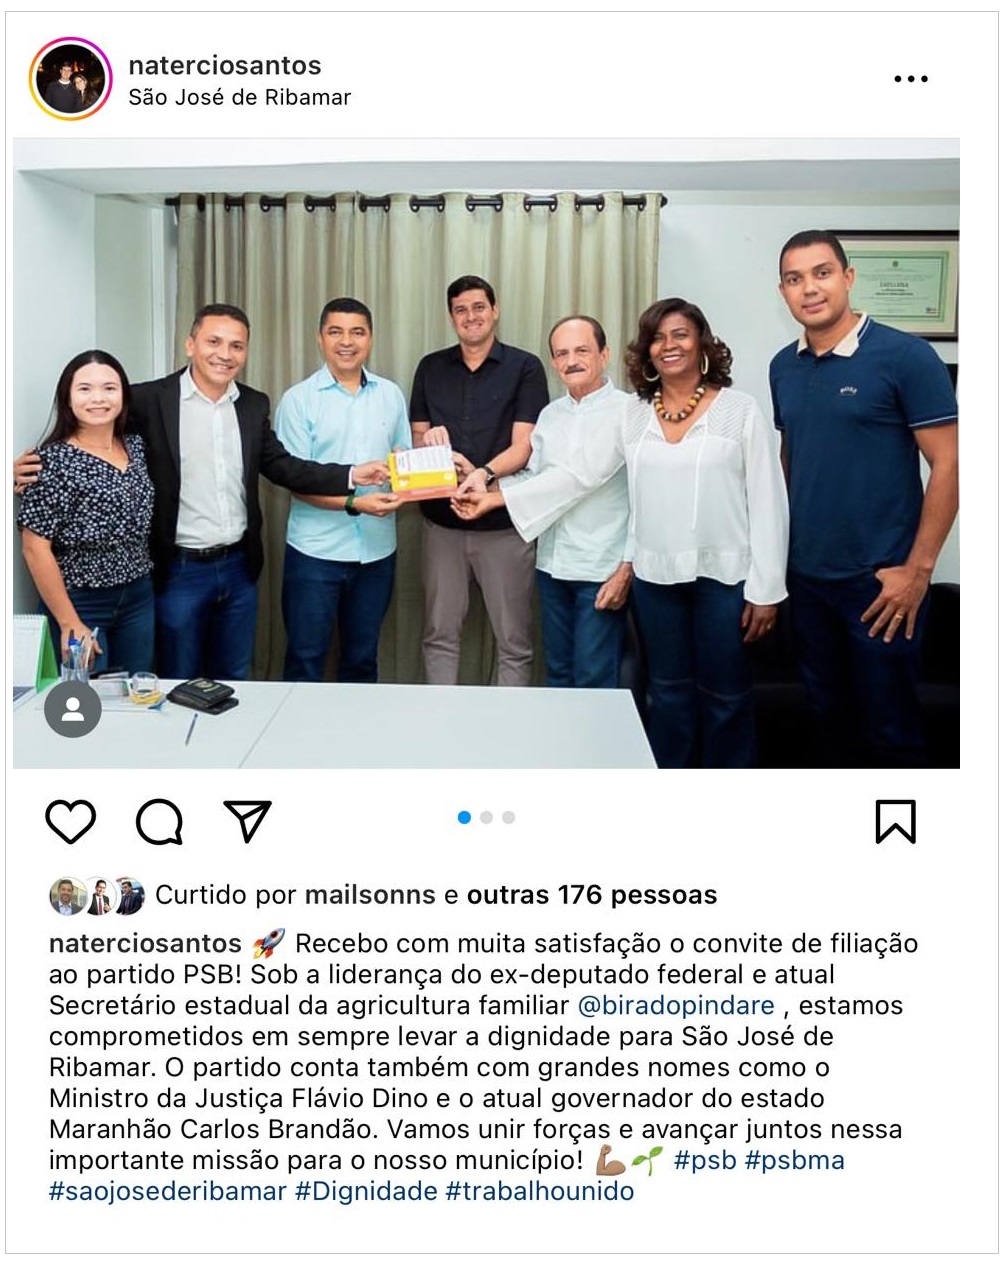 Após desdenhar de Flávio Dino e Carlos Brandão em 2022, agora “Natercio 30” chama socialistas de grandes nomes.